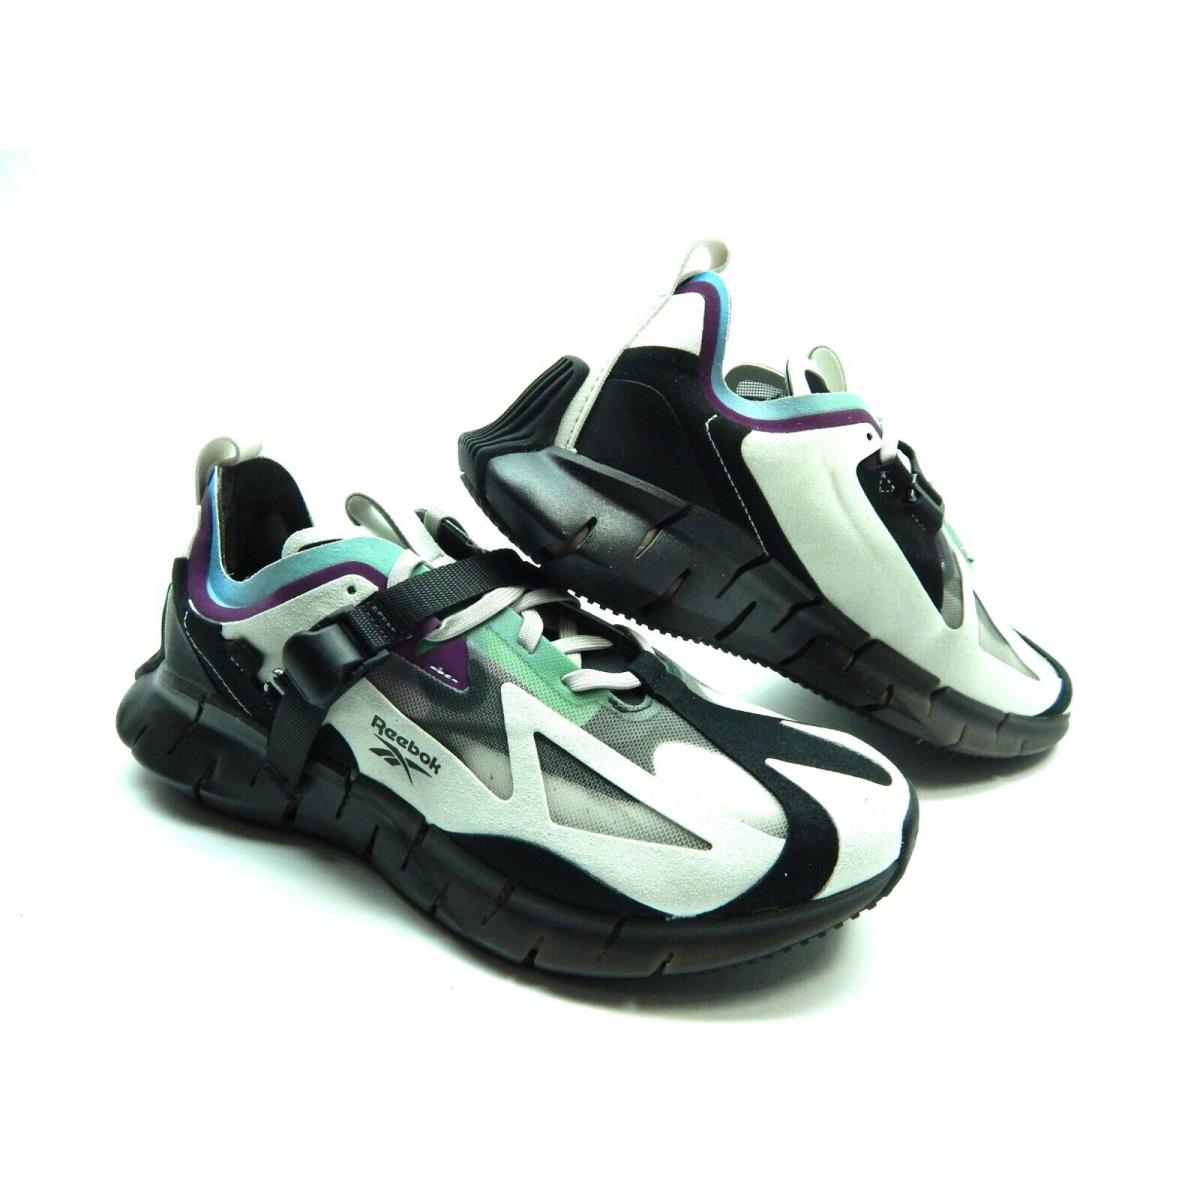 Reebok shoes ZIG KINETICA CONCEPT - Multicolor 4